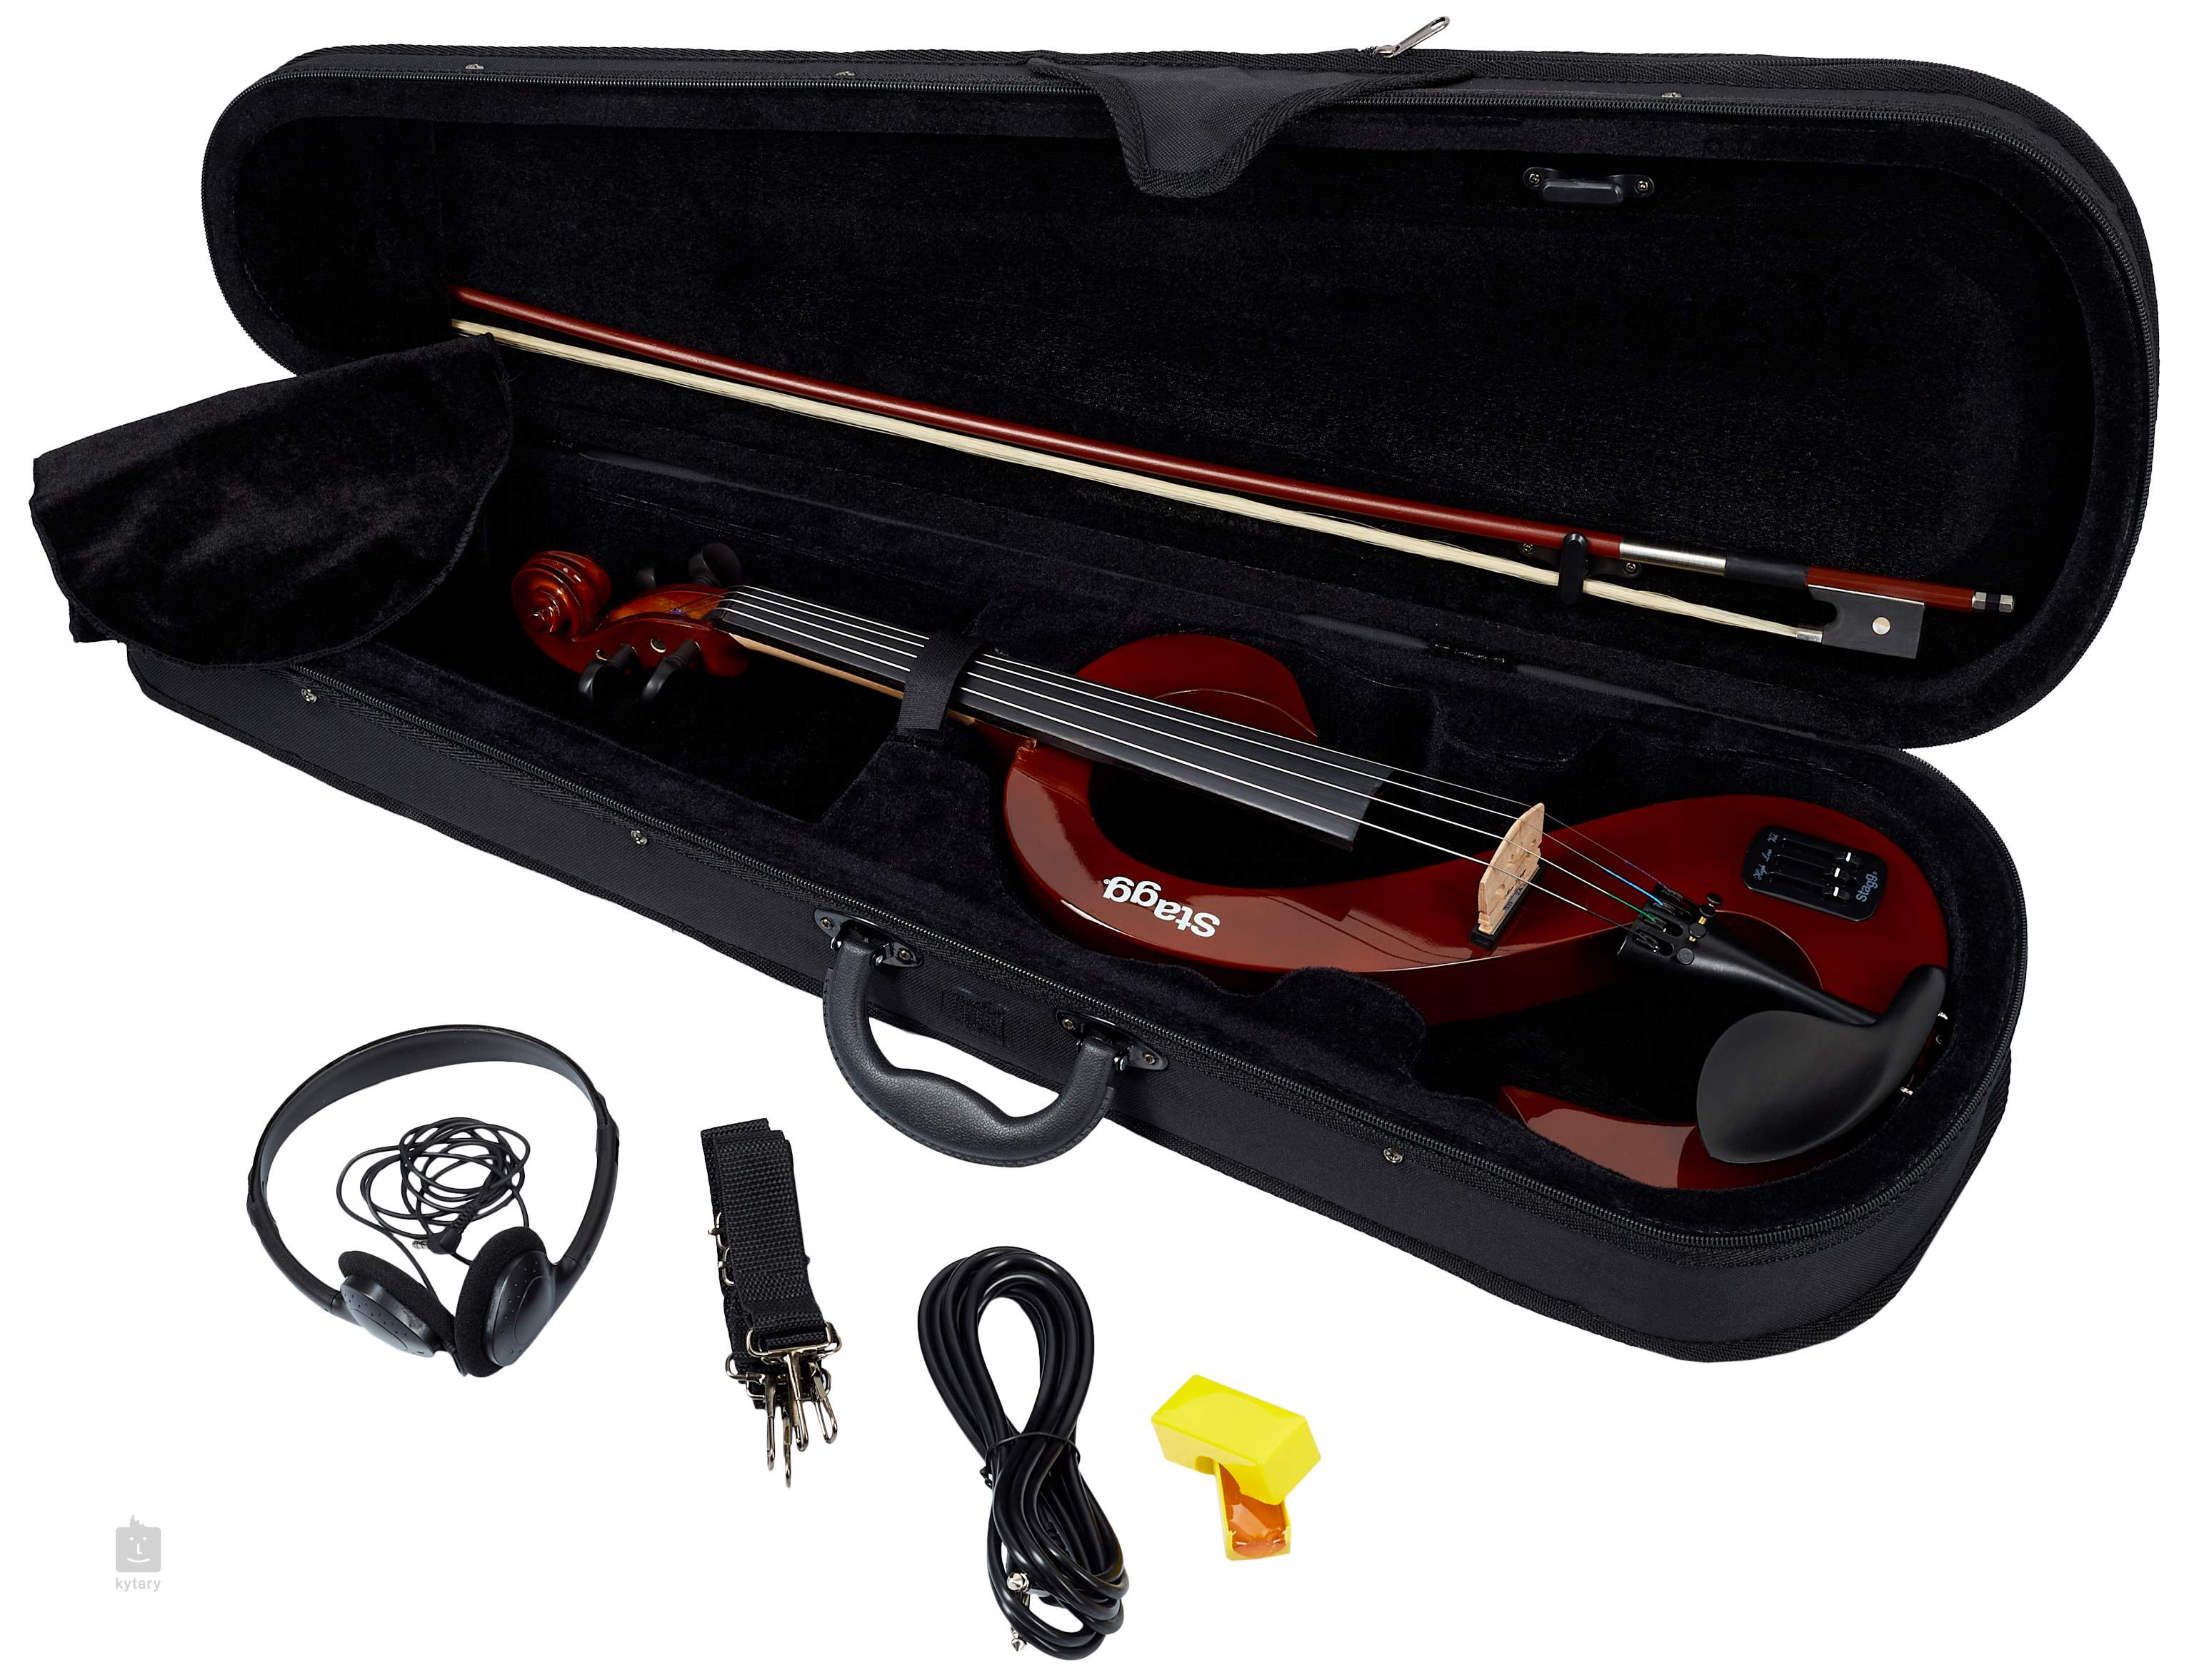 Le violon électrique : guide des normes techniques